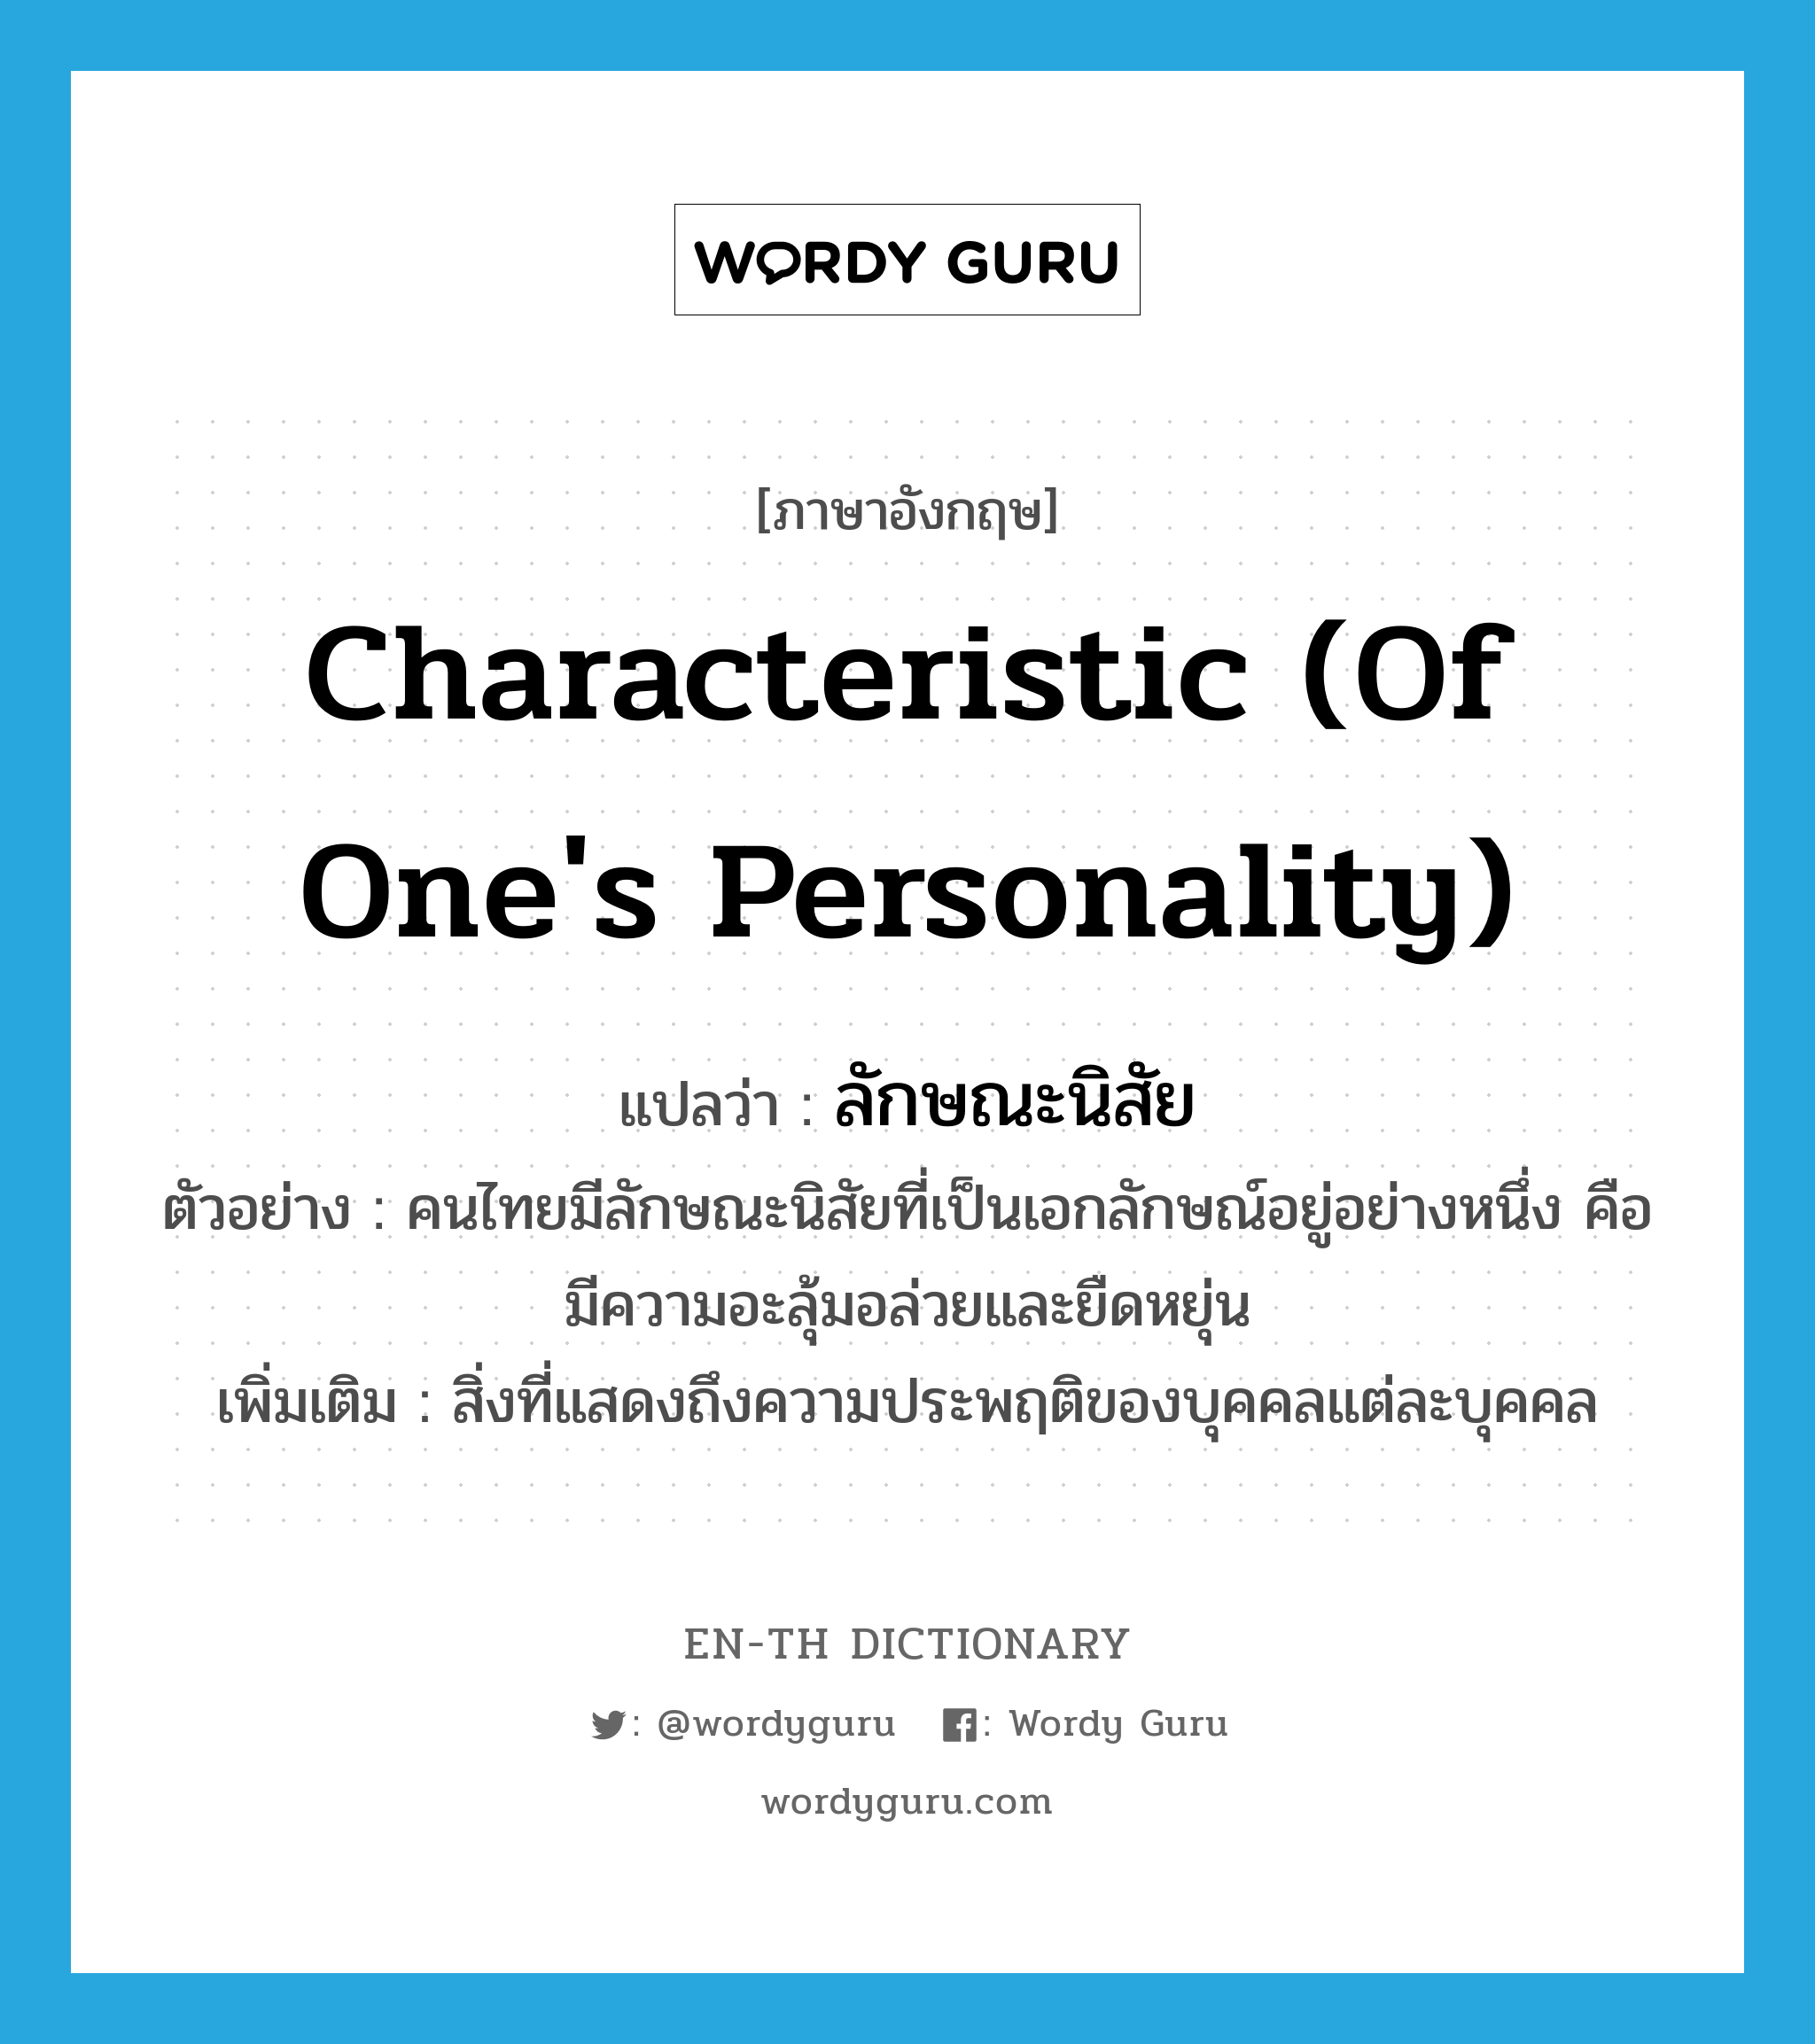 characteristic (of one's personality) แปลว่า?, คำศัพท์ภาษาอังกฤษ characteristic (of one's personality) แปลว่า ลักษณะนิสัย ประเภท N ตัวอย่าง คนไทยมีลักษณะนิสัยที่เป็นเอกลักษณ์อยู่อย่างหนึ่ง คือ มีความอะลุ้มอล่วยและยืดหยุ่น เพิ่มเติม สิ่งที่แสดงถึงความประพฤติของบุคคลแต่ละบุคคล หมวด N